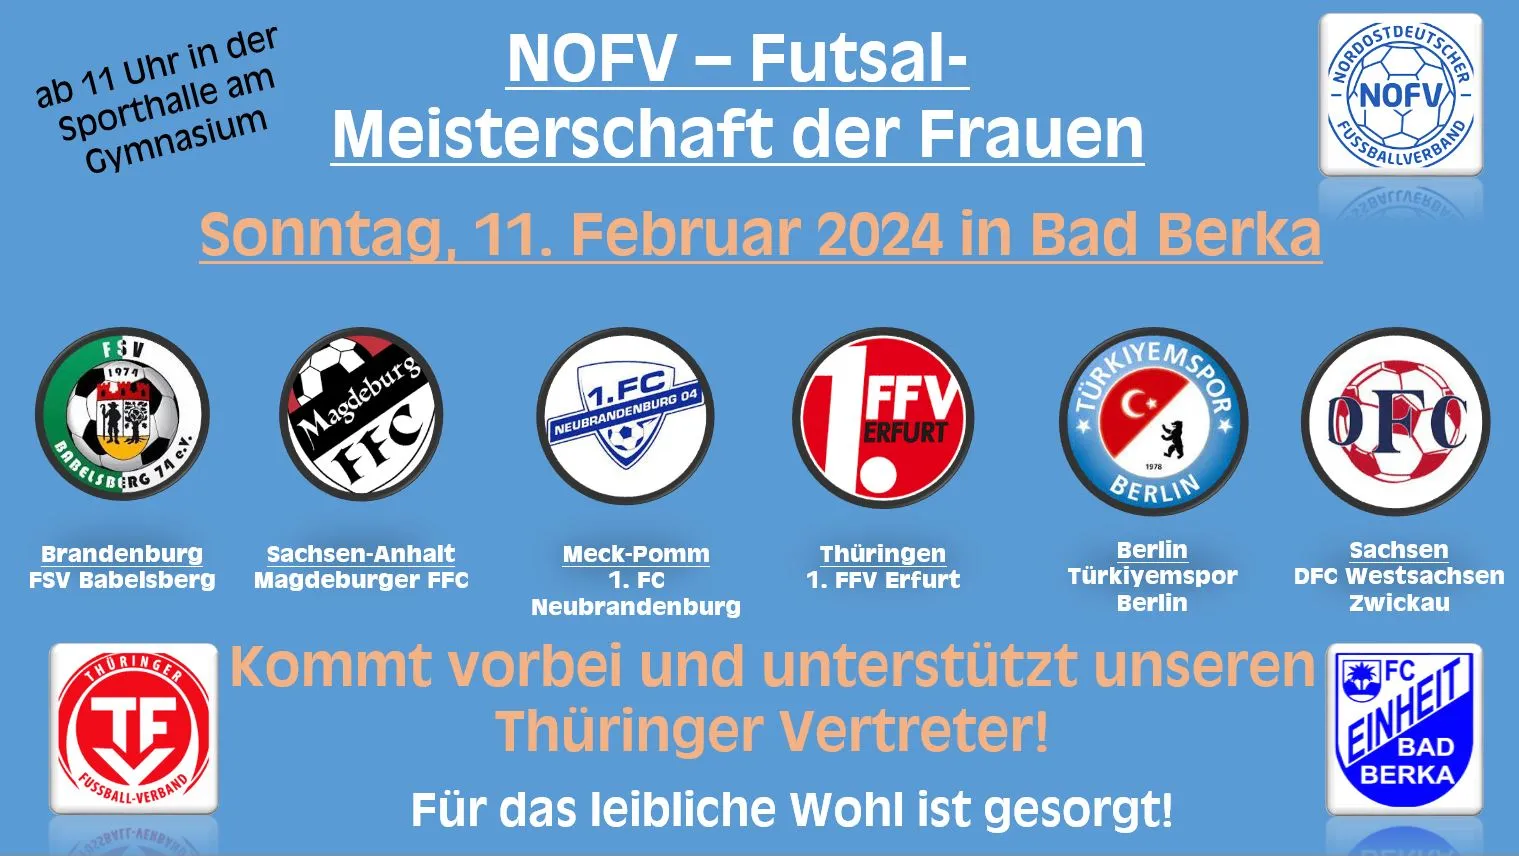 Nordostdeutscher Fußballverband - Futsal-Meisterschaft der Frauen in Bad Berka